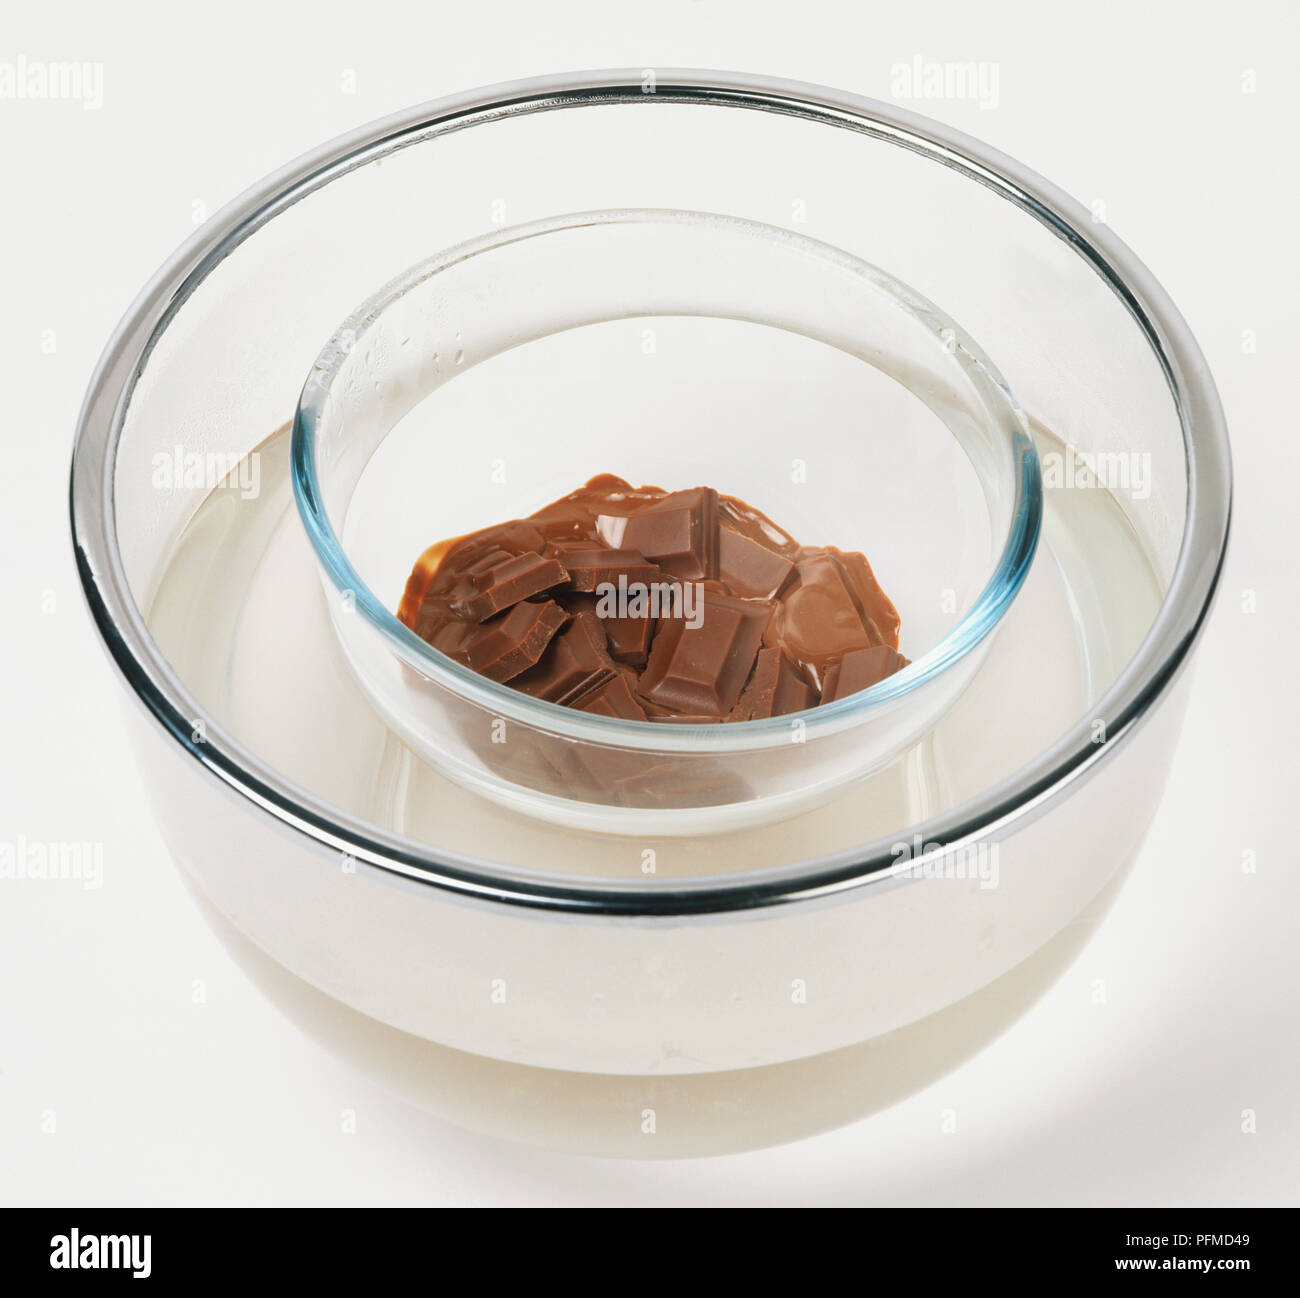 Carrés de chocolat fondant dans un bol en verre placé dans un autre bol en verre contenant de l'eau chaude. Banque D'Images